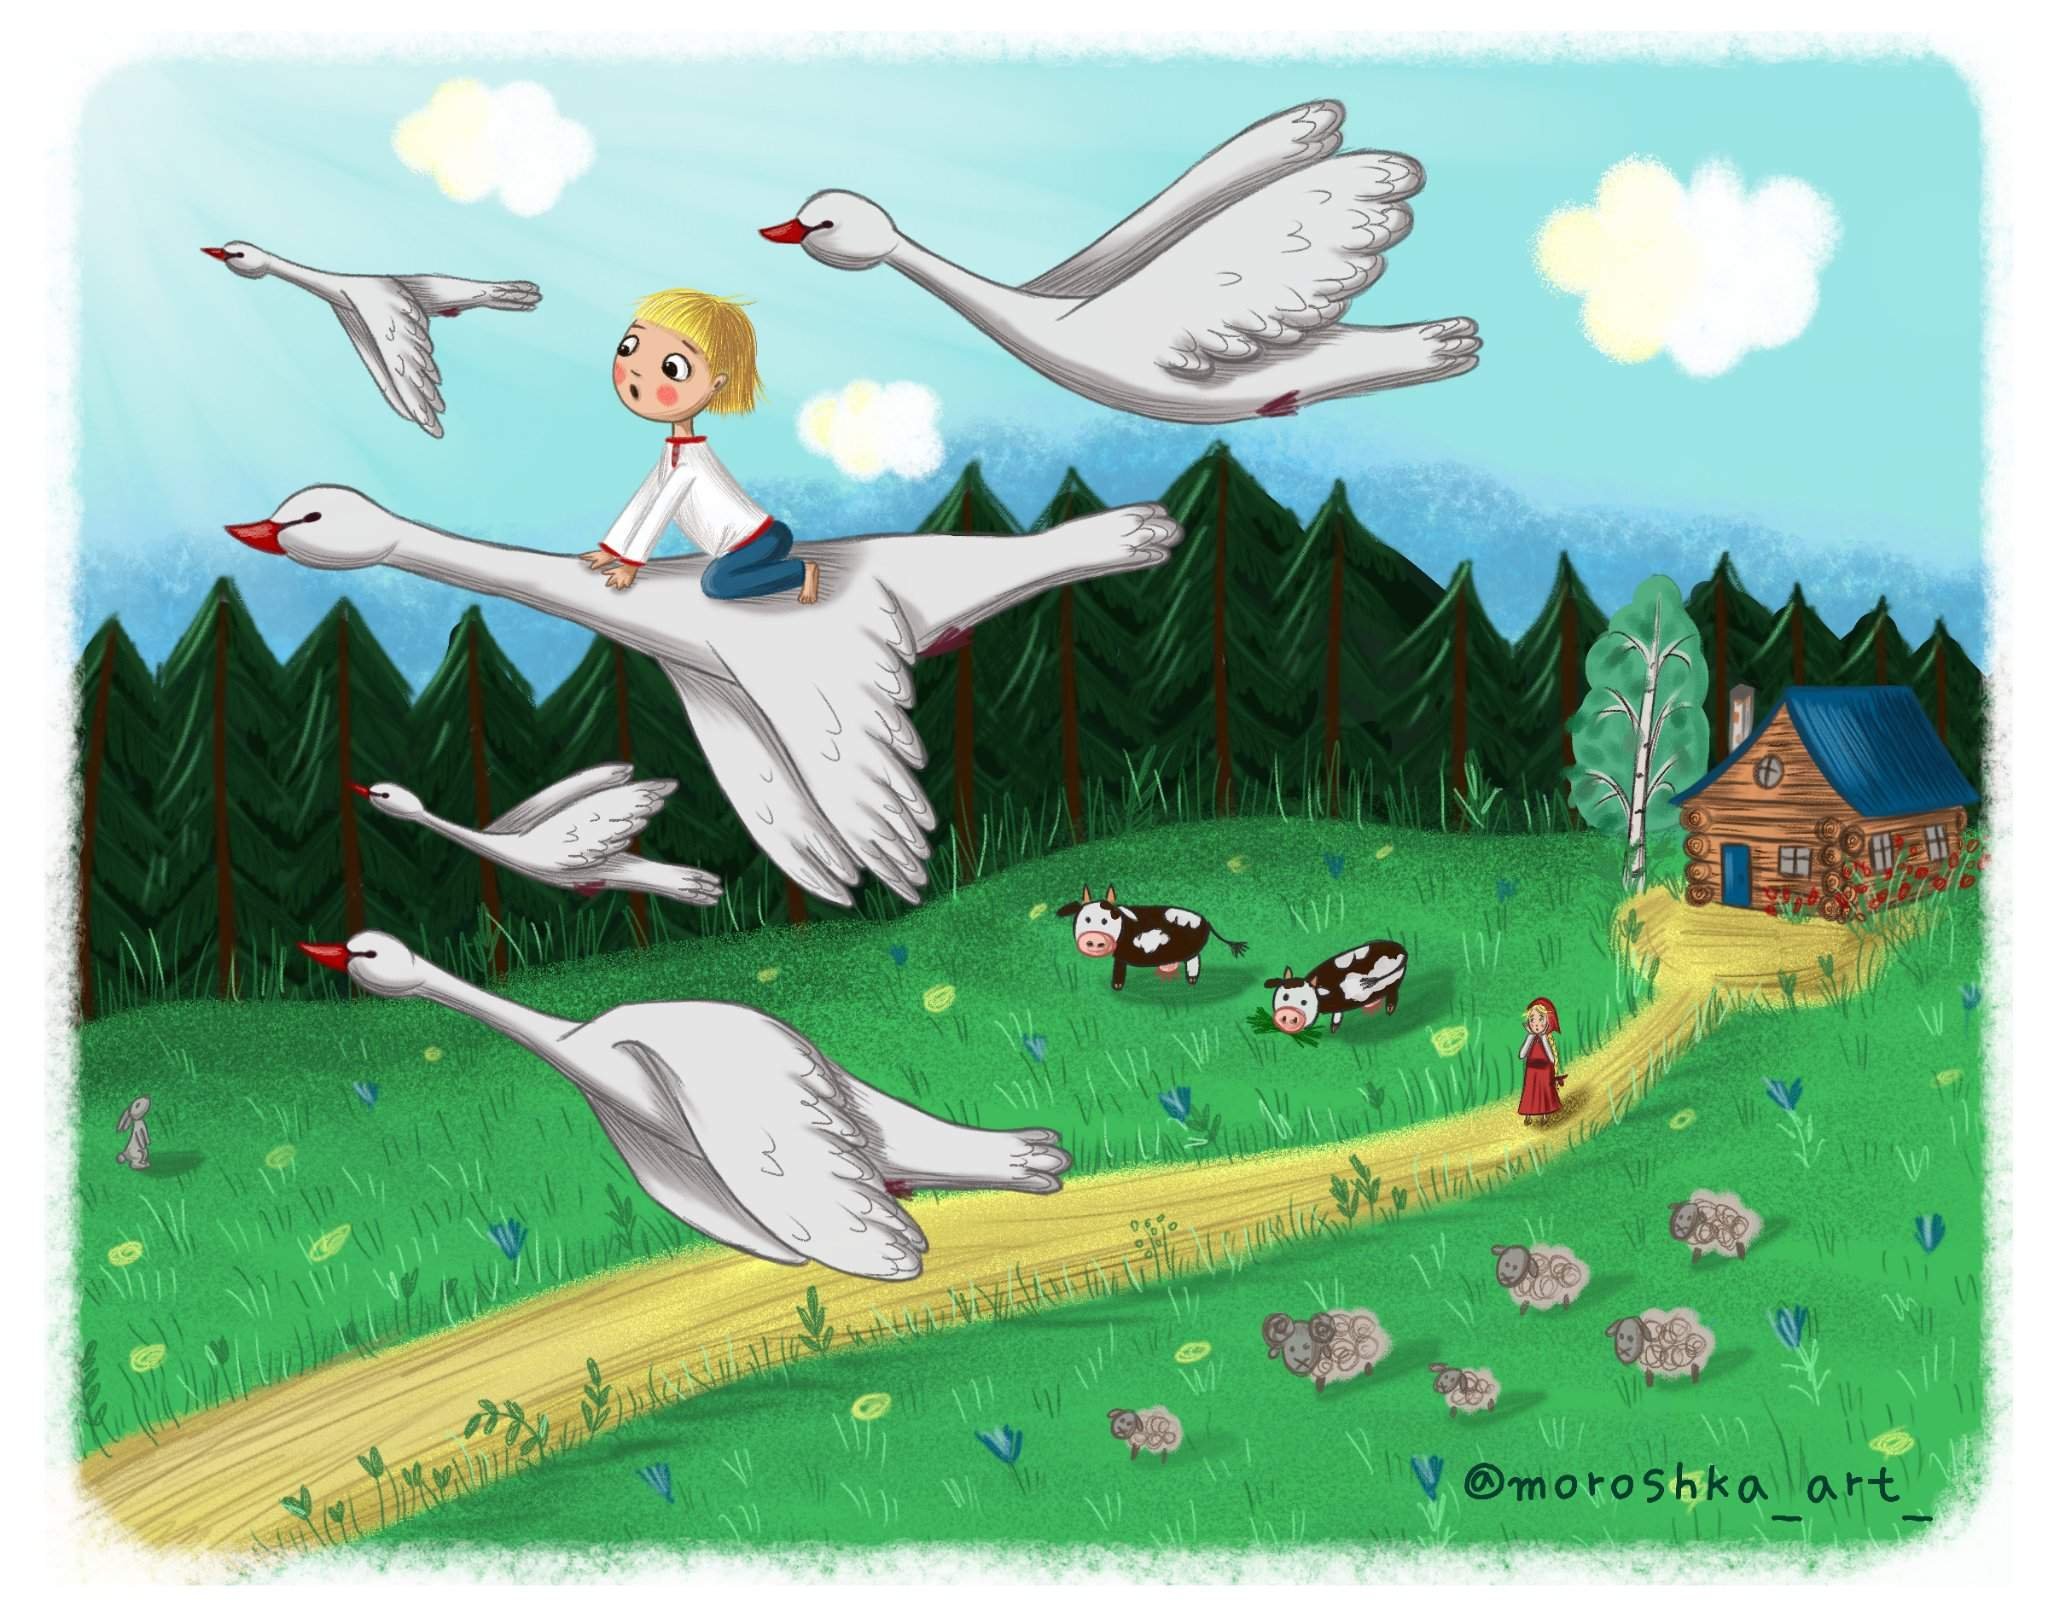 Читать про гуся. Иллюстрация к сказке гуси лебеди. Иллюстрация к сказке гуси лебеди для детей. Сказка гуси лебеди Иванушка. Сказка гуси лебеди для детей.